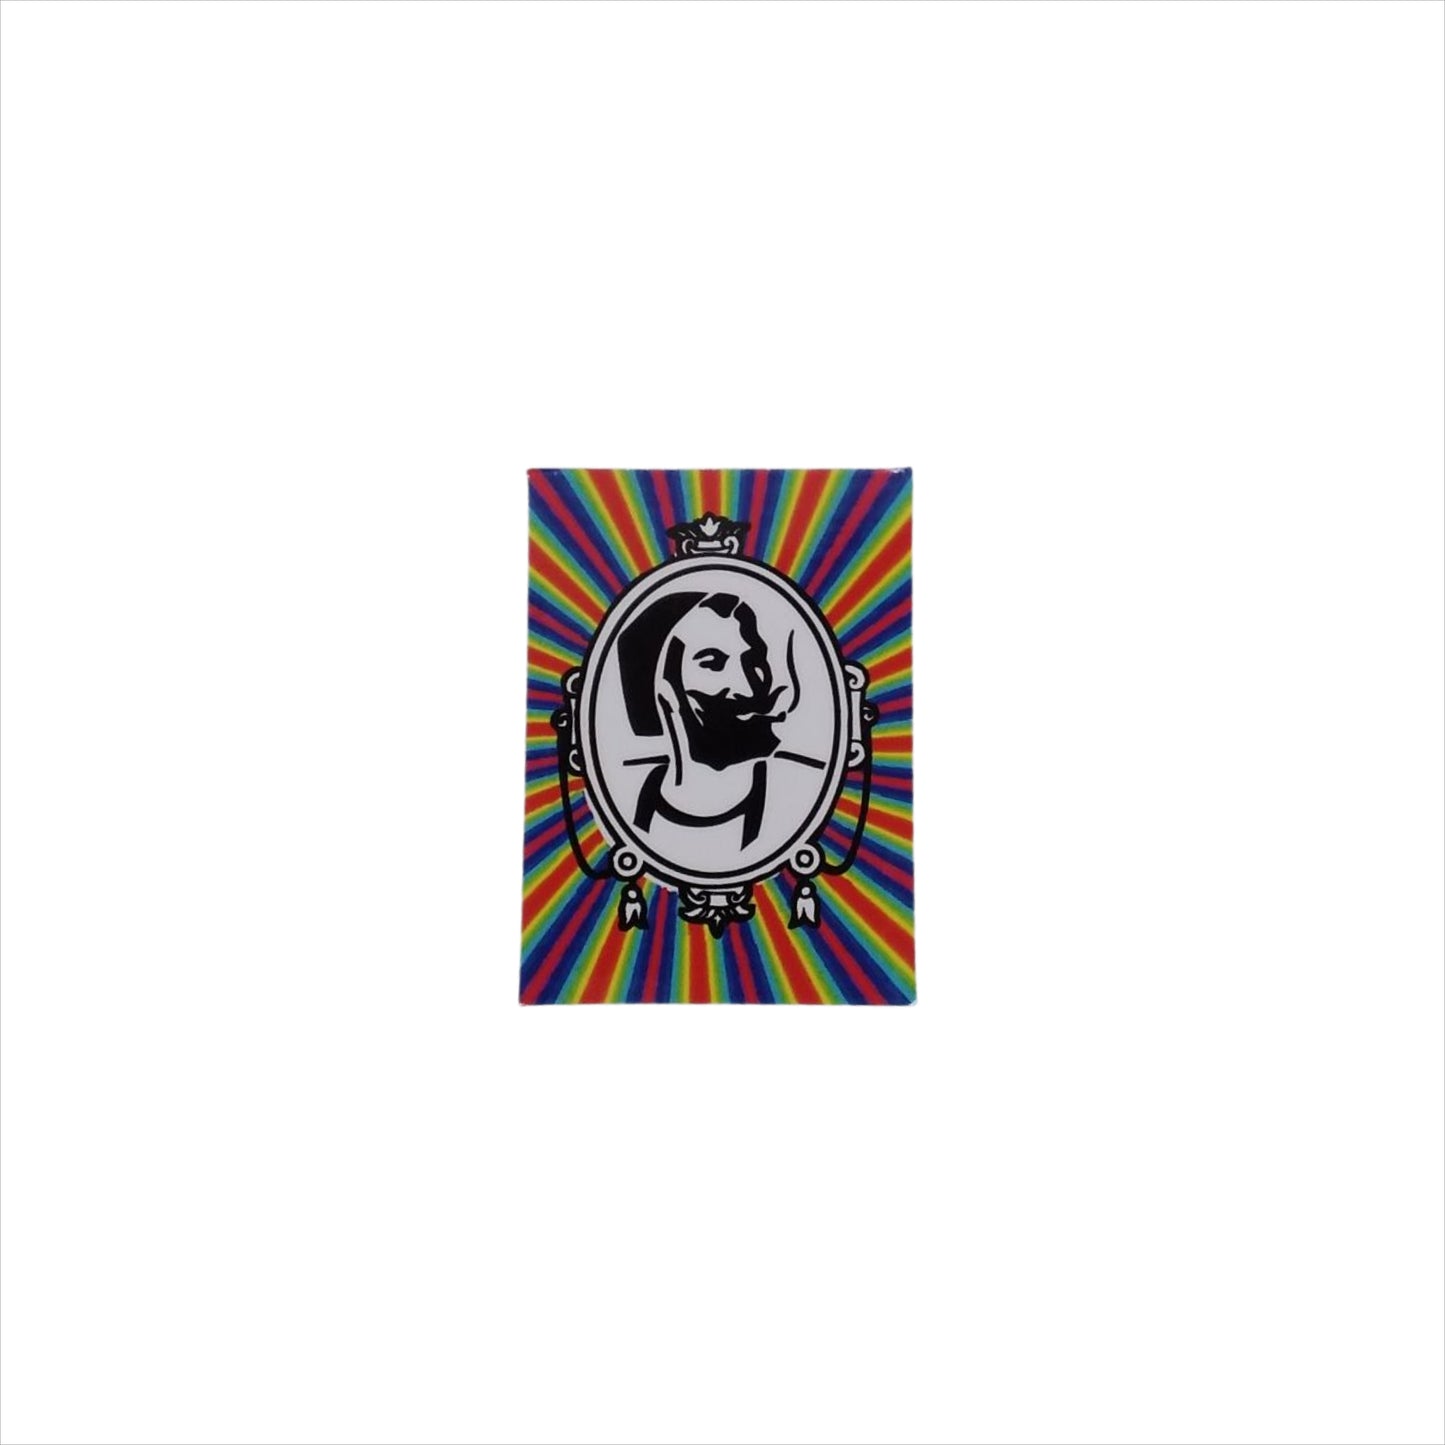 Zig Zag Man with Rainbow Background - Sticker